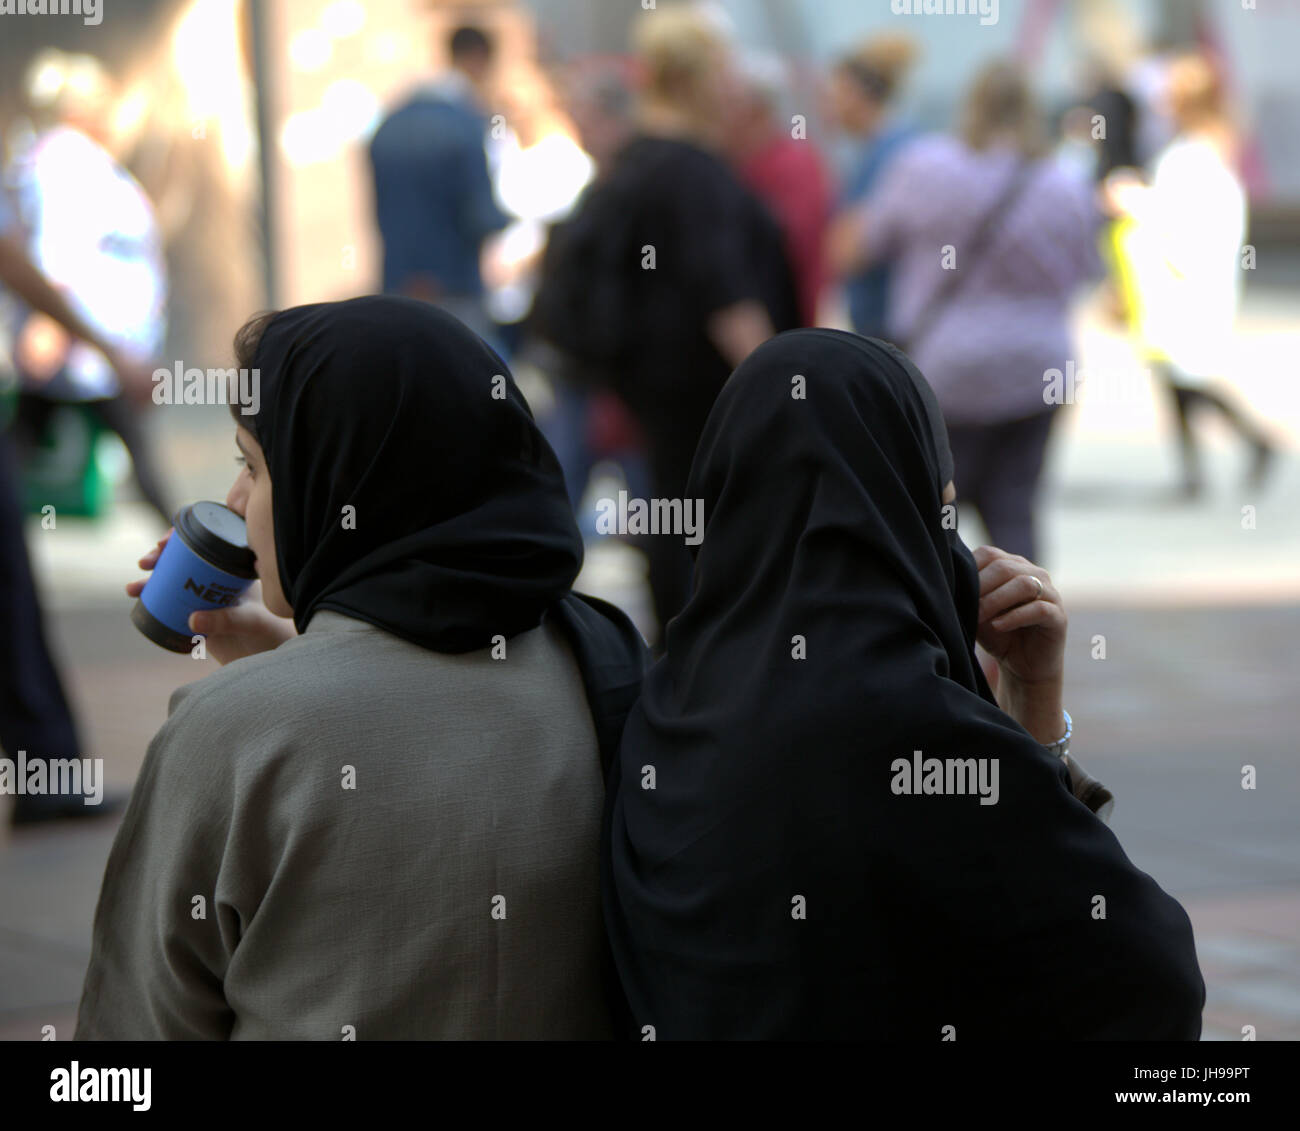 Asiatische Familie Flüchtling junge Frau Mädchen Schüler Schüler gekleidet Hijab Schal auf Straße in der UK alltägliche Szene gehen auf der Straße Stockfoto